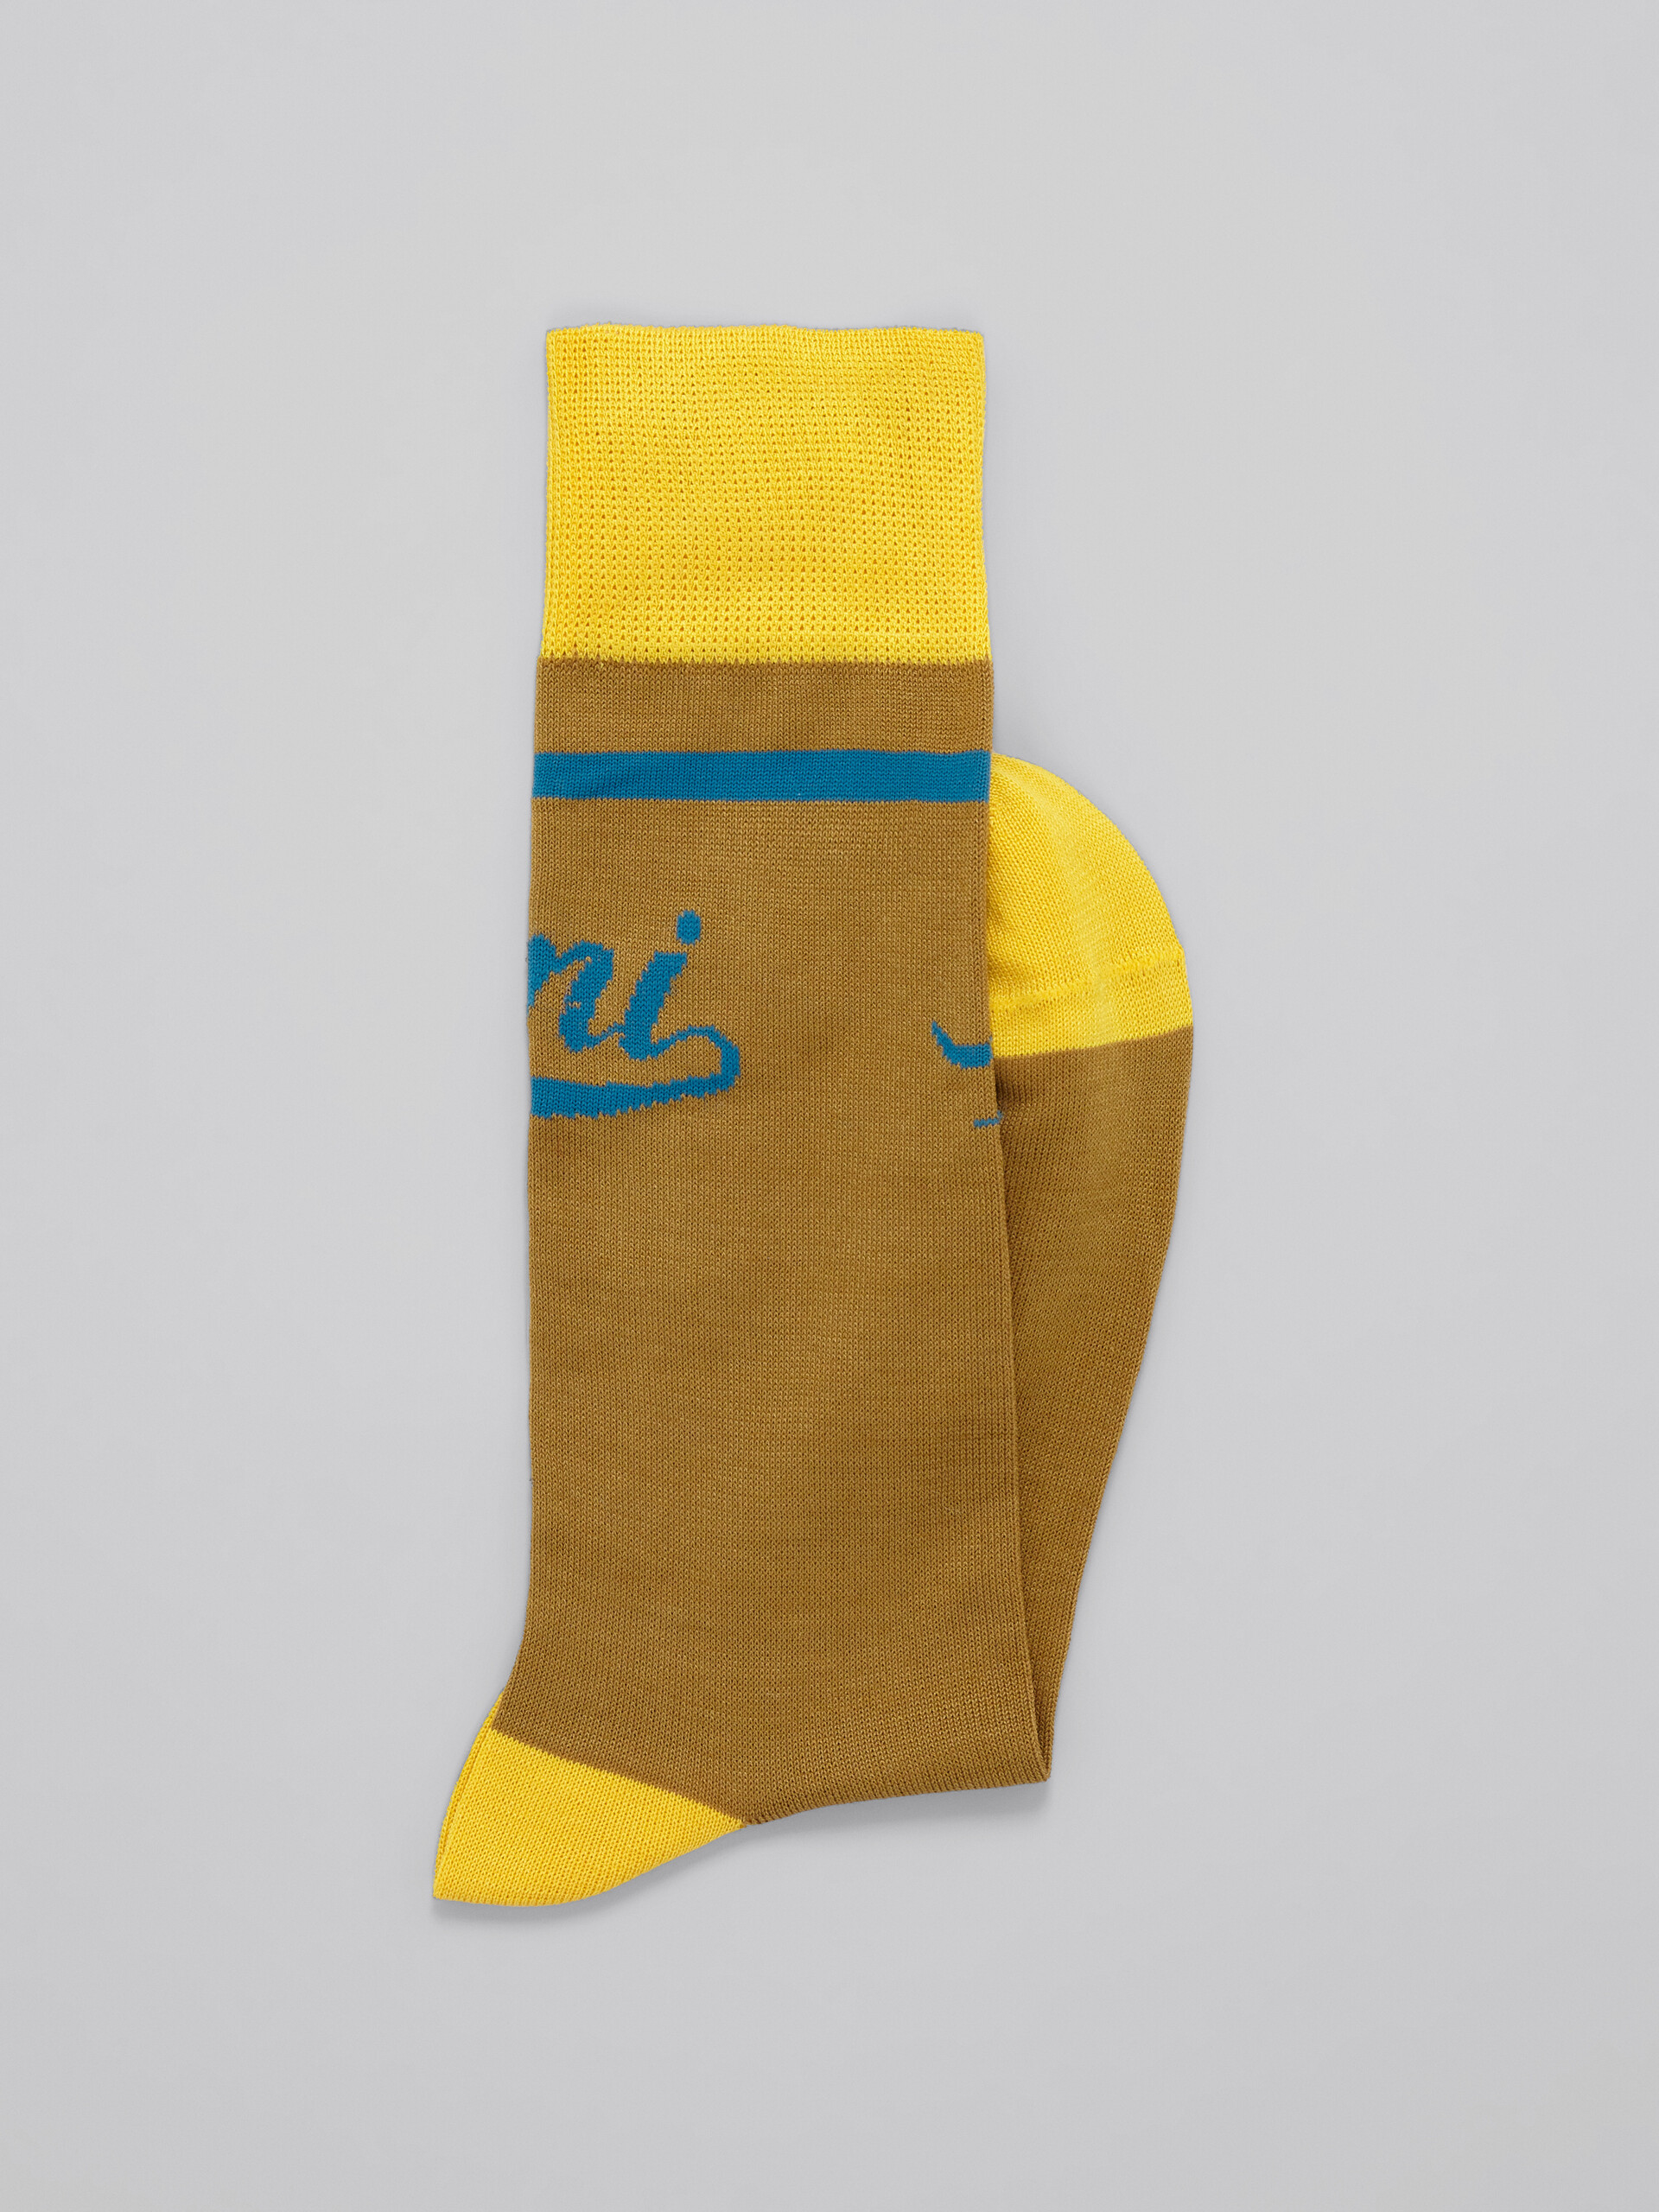 Brown and yellow socks with logo - Socks - Image 2